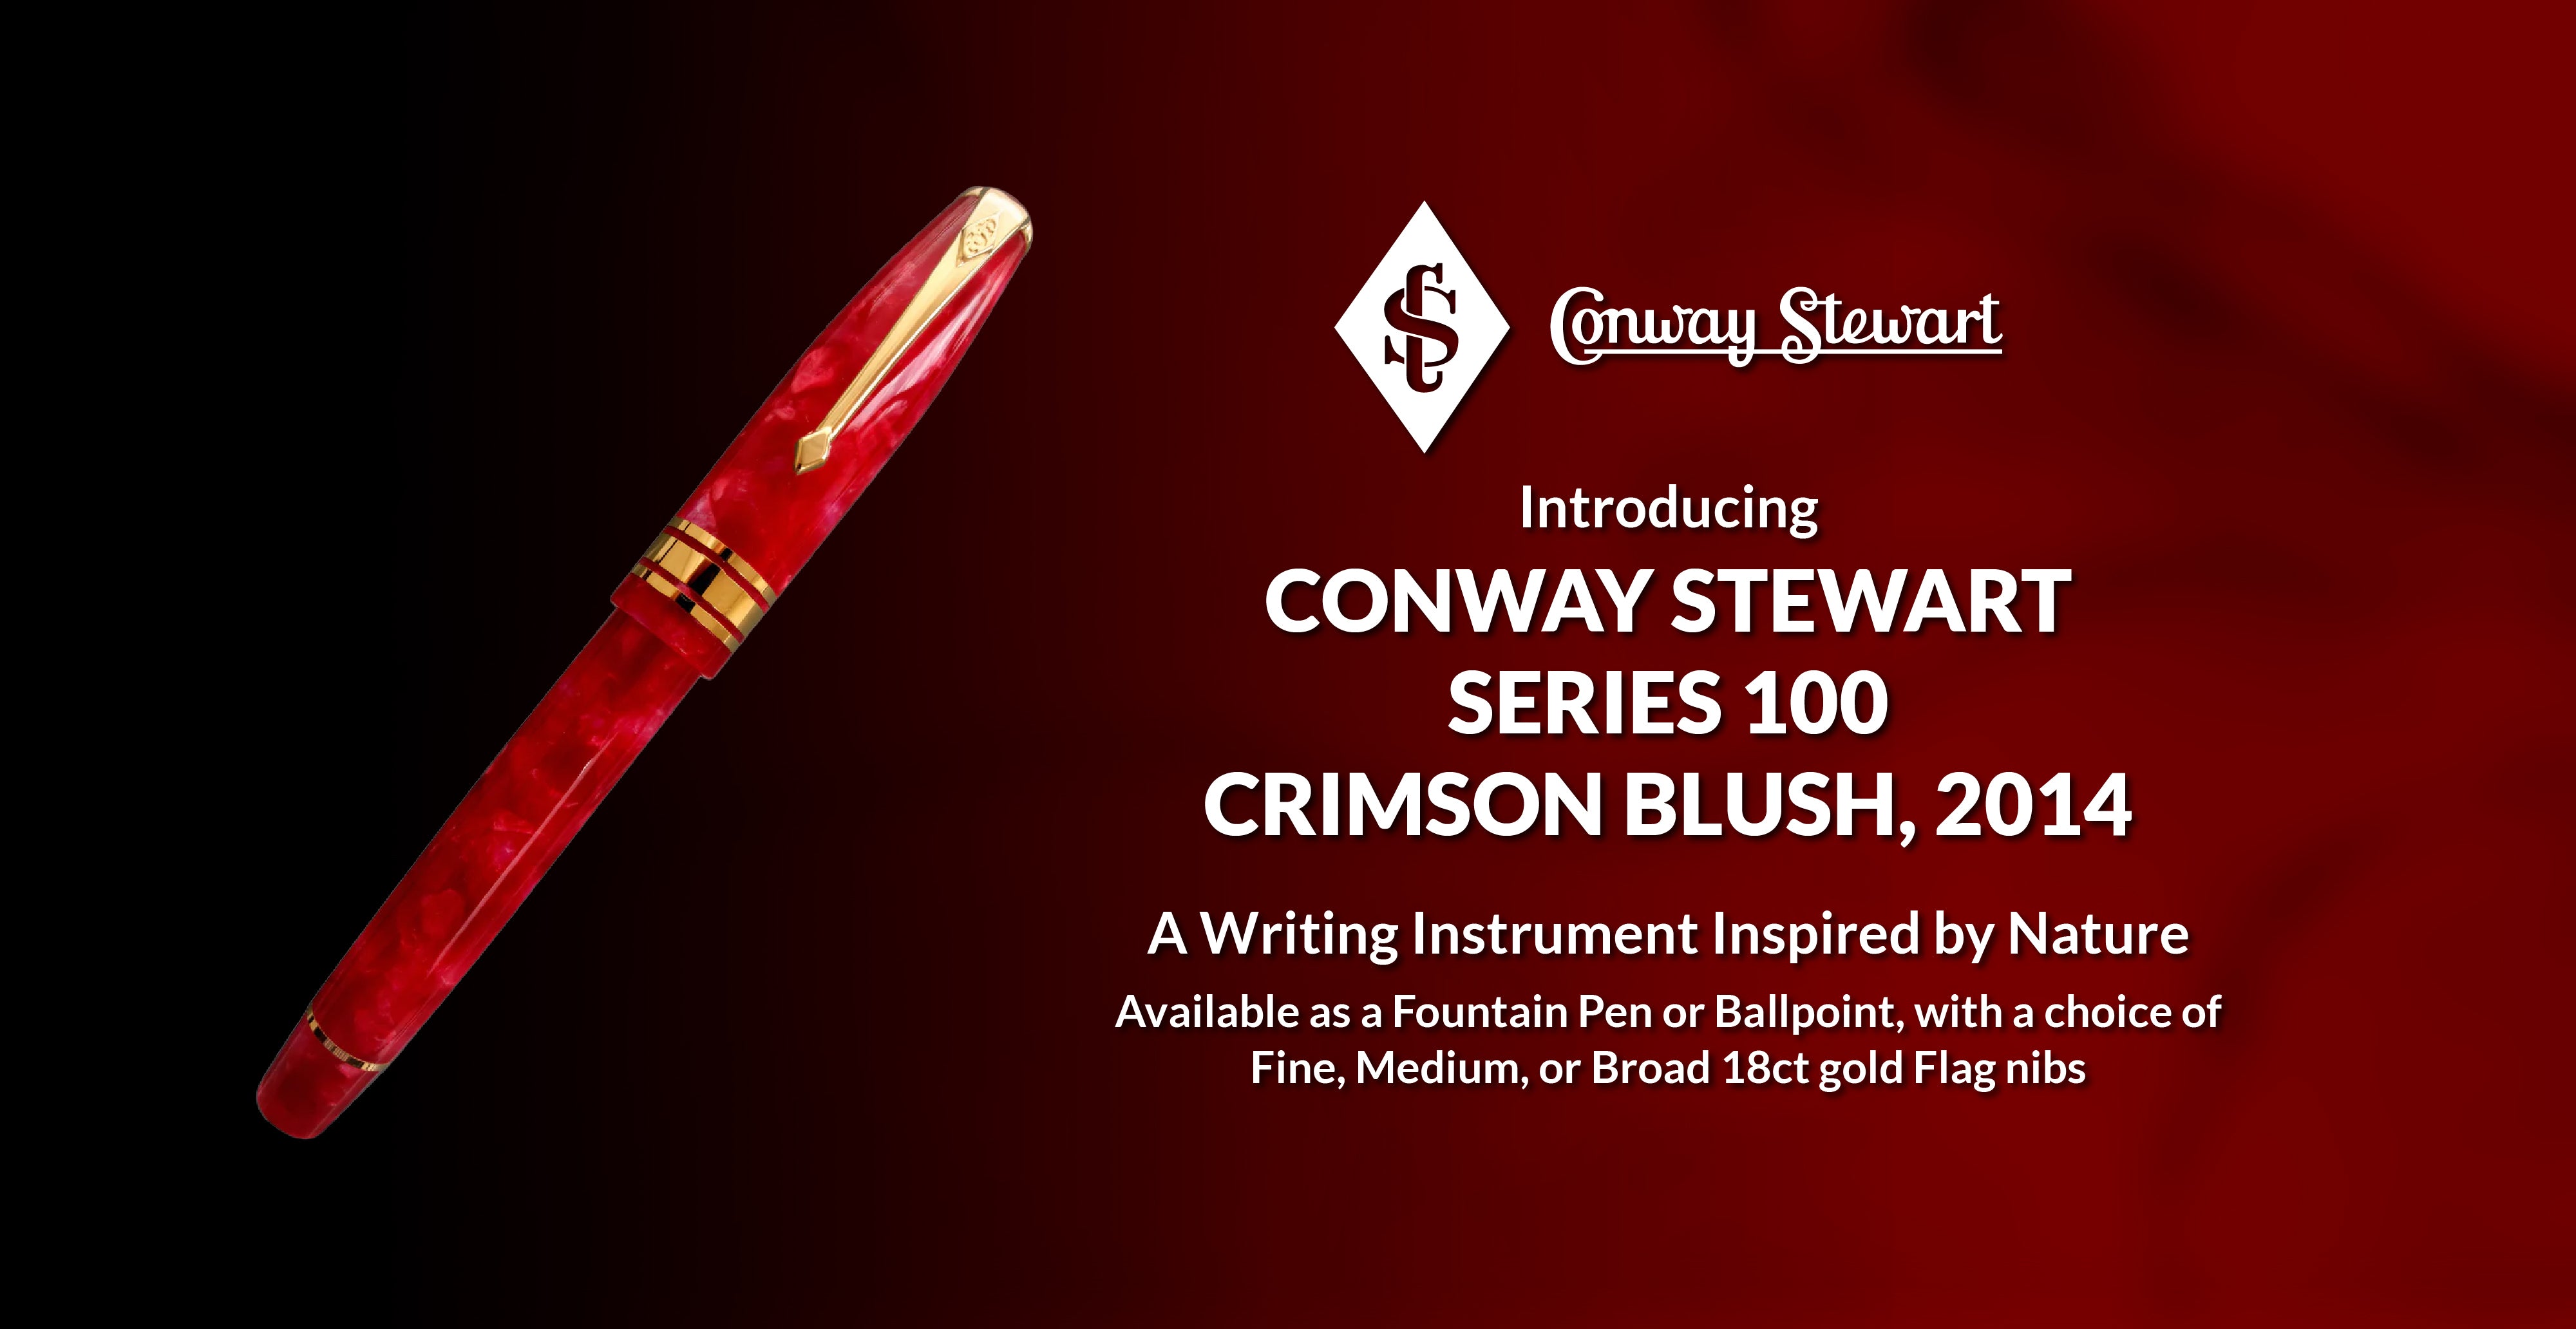 Conway Stewart Series 100 Burgundy Blush, 2014